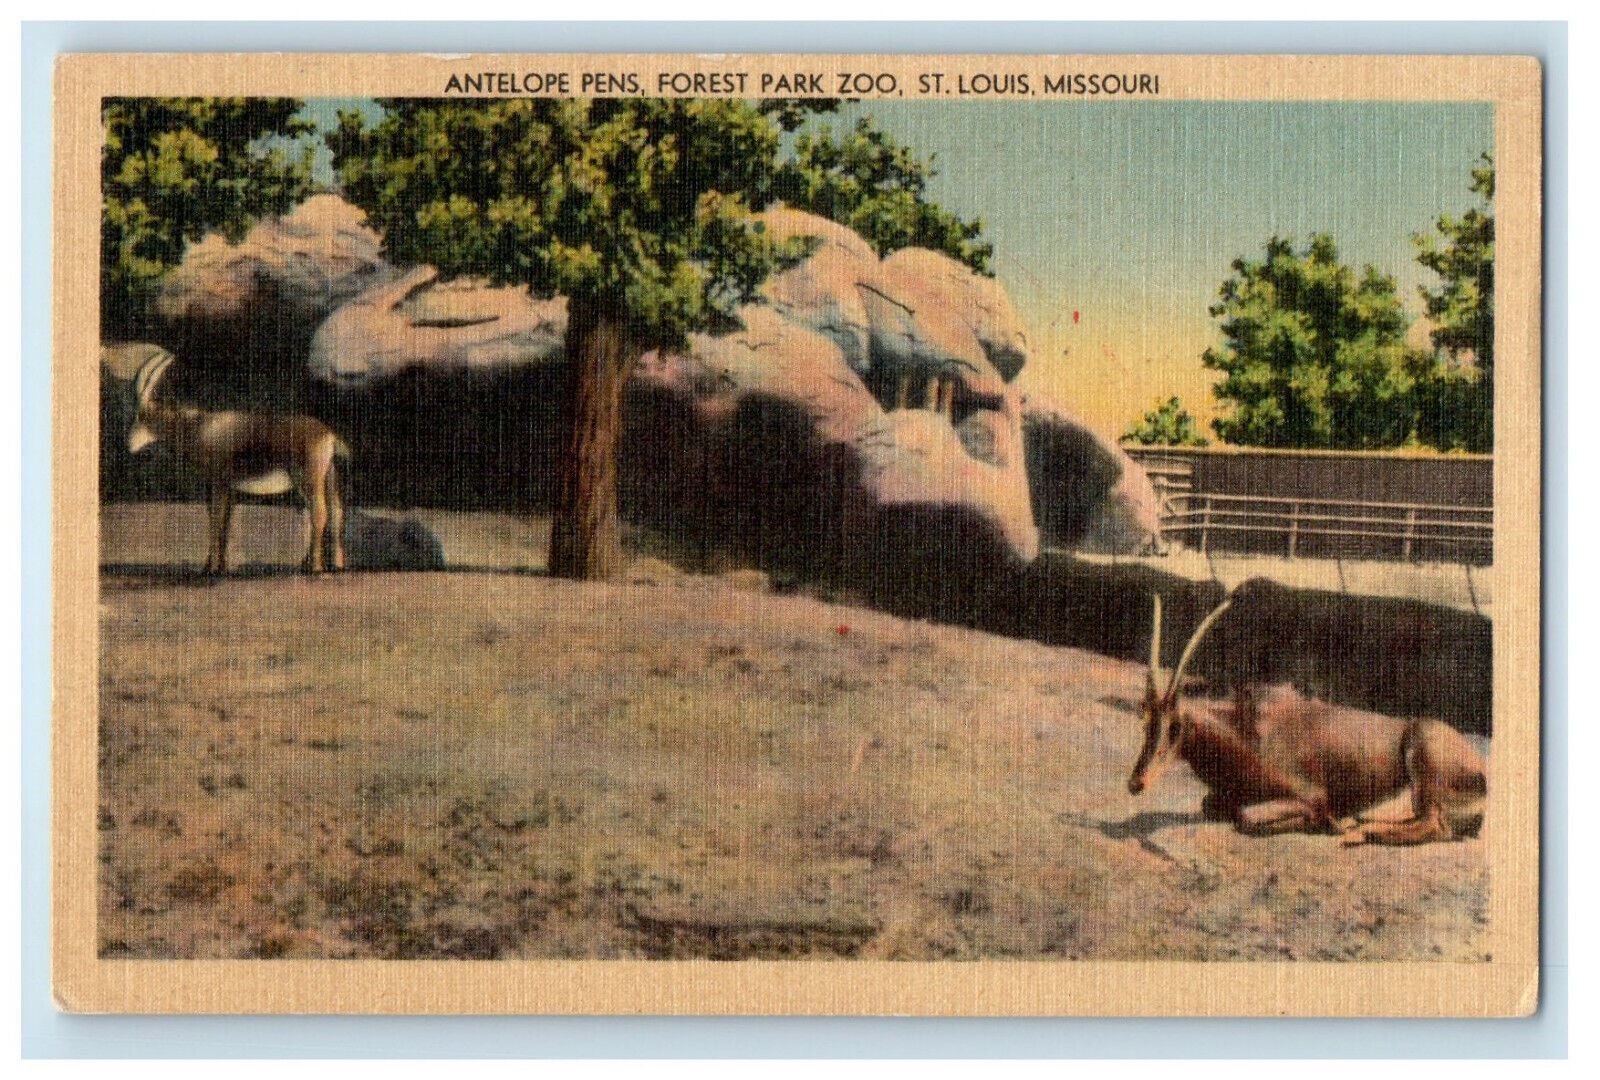 c1930s Antelope Pens, Forest Park Zoo, St. Louis Missouri MO Postcard